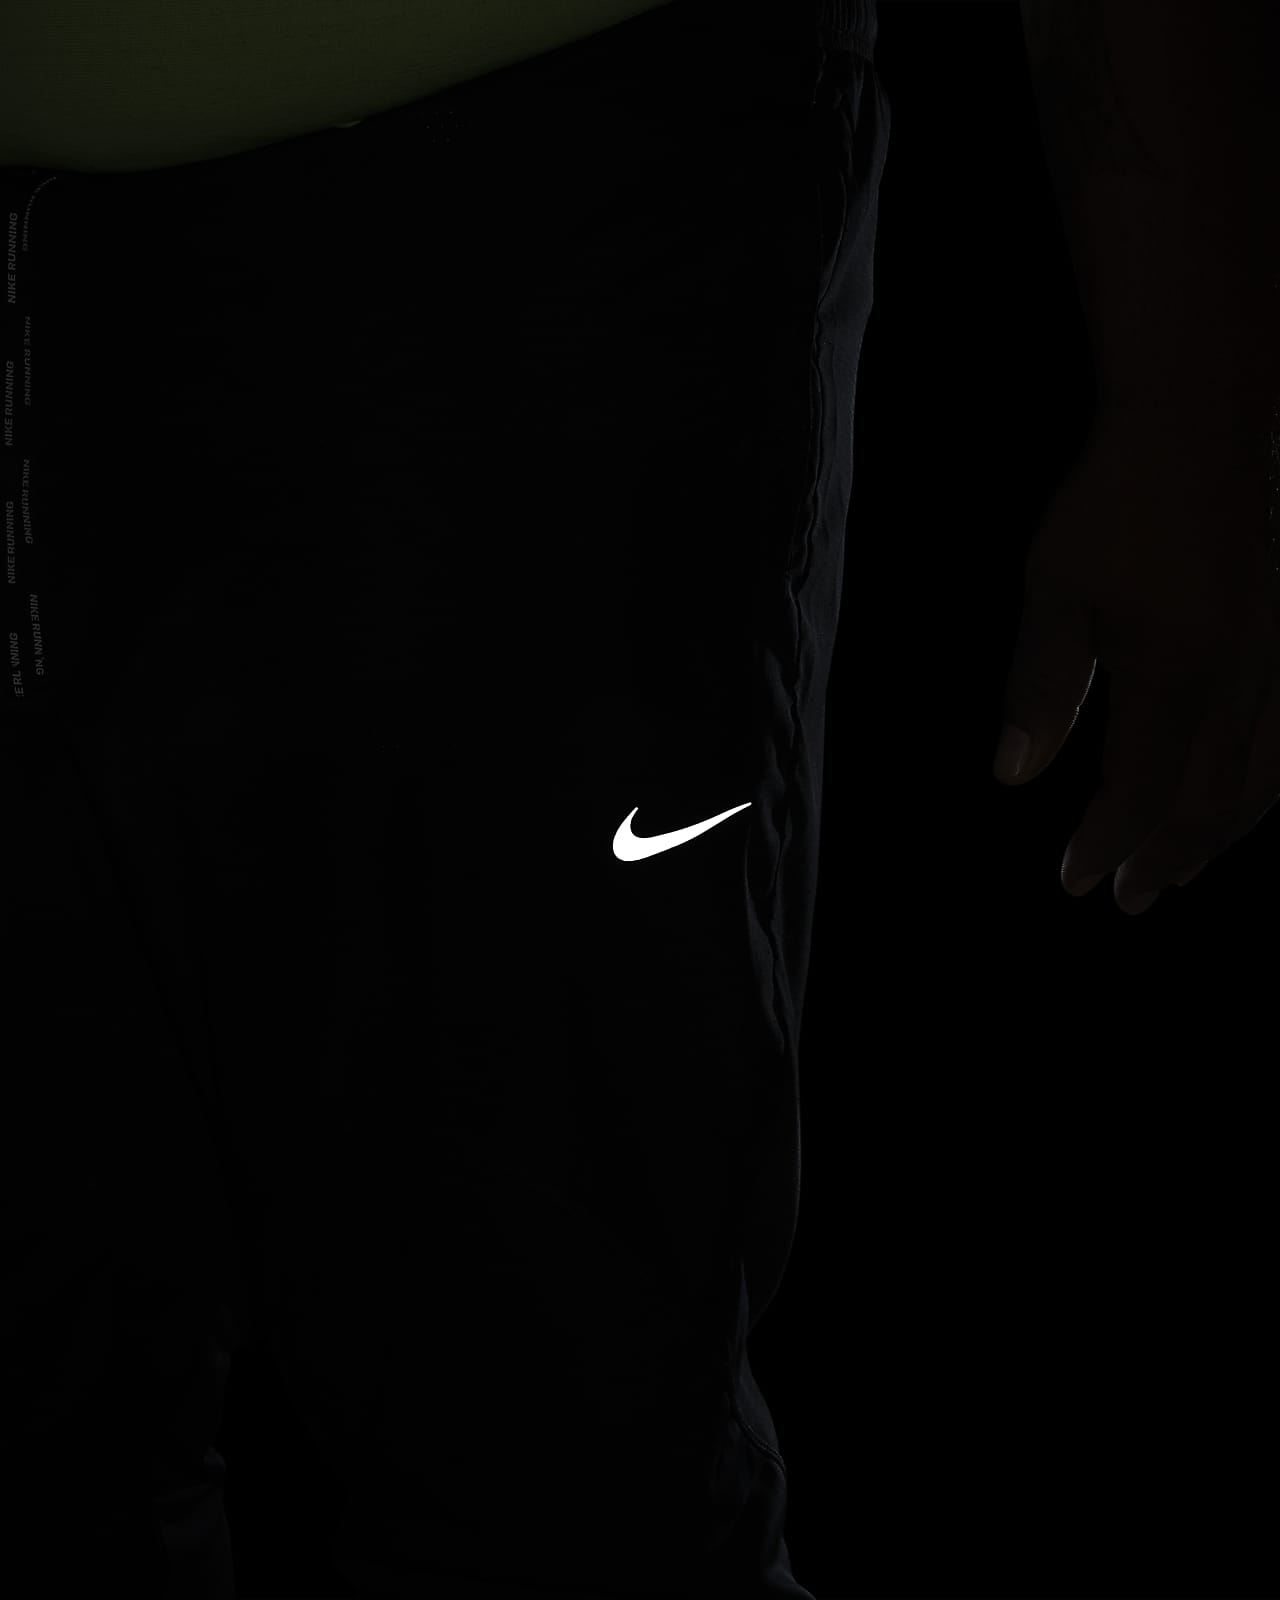 Nike Dri-FIT Men's Racing Pants.